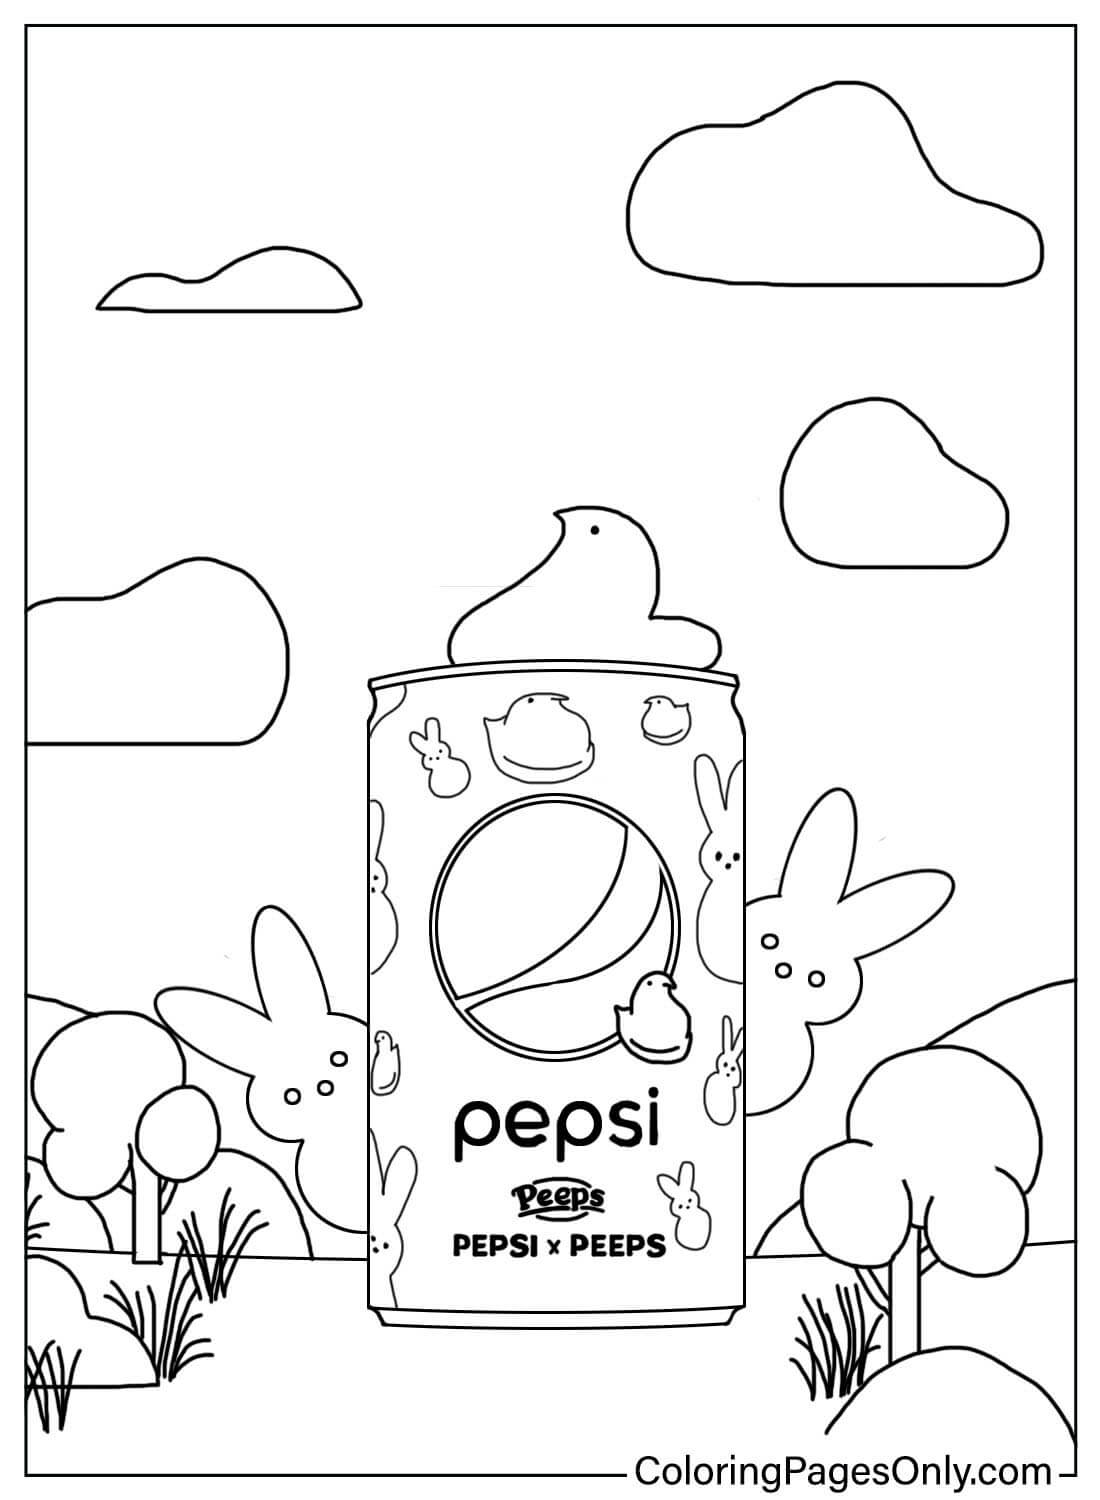 Peeps et Pepsi de Peeps